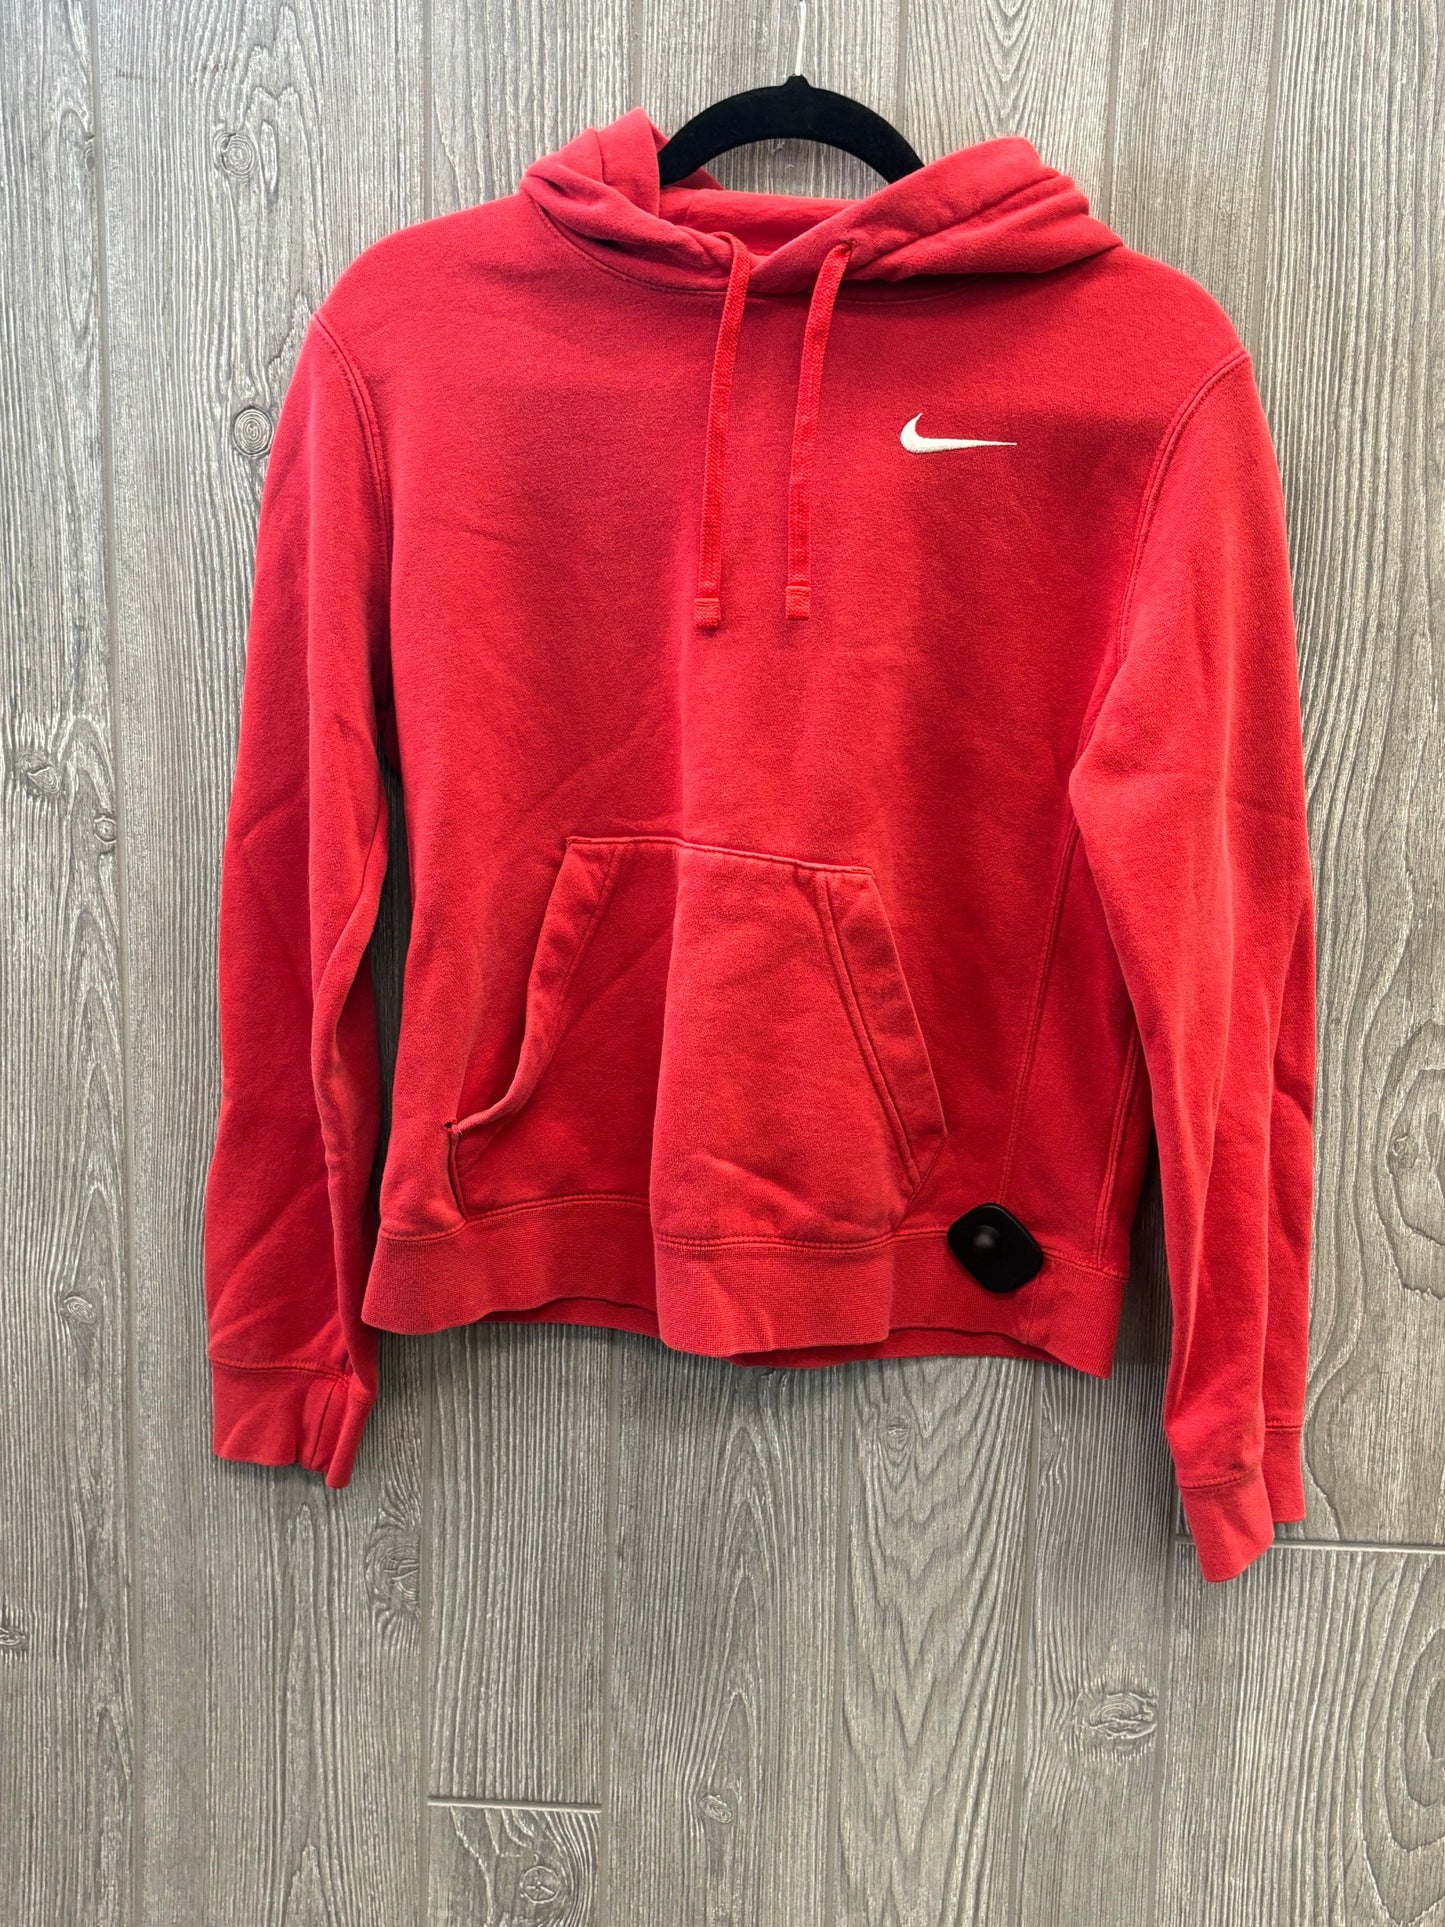 Red Athletic Sweatshirt Hoodie Nike Apparel, Size S